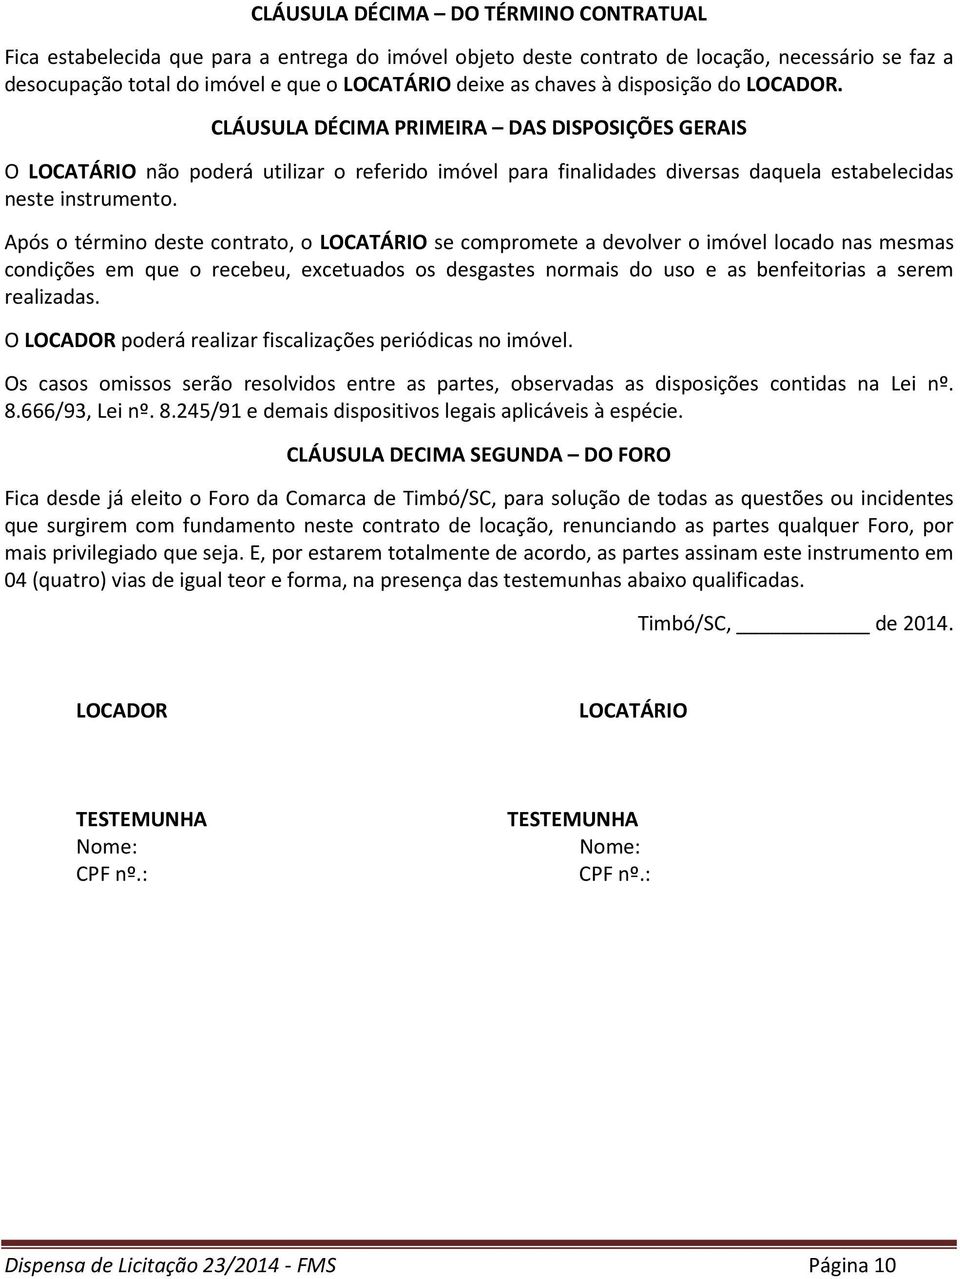 Após o término deste contrato, o LOCATÁRIO se compromete a devolver o imóvel locado nas mesmas condições em que o recebeu, excetuados os desgastes normais do uso e as benfeitorias a serem realizadas.